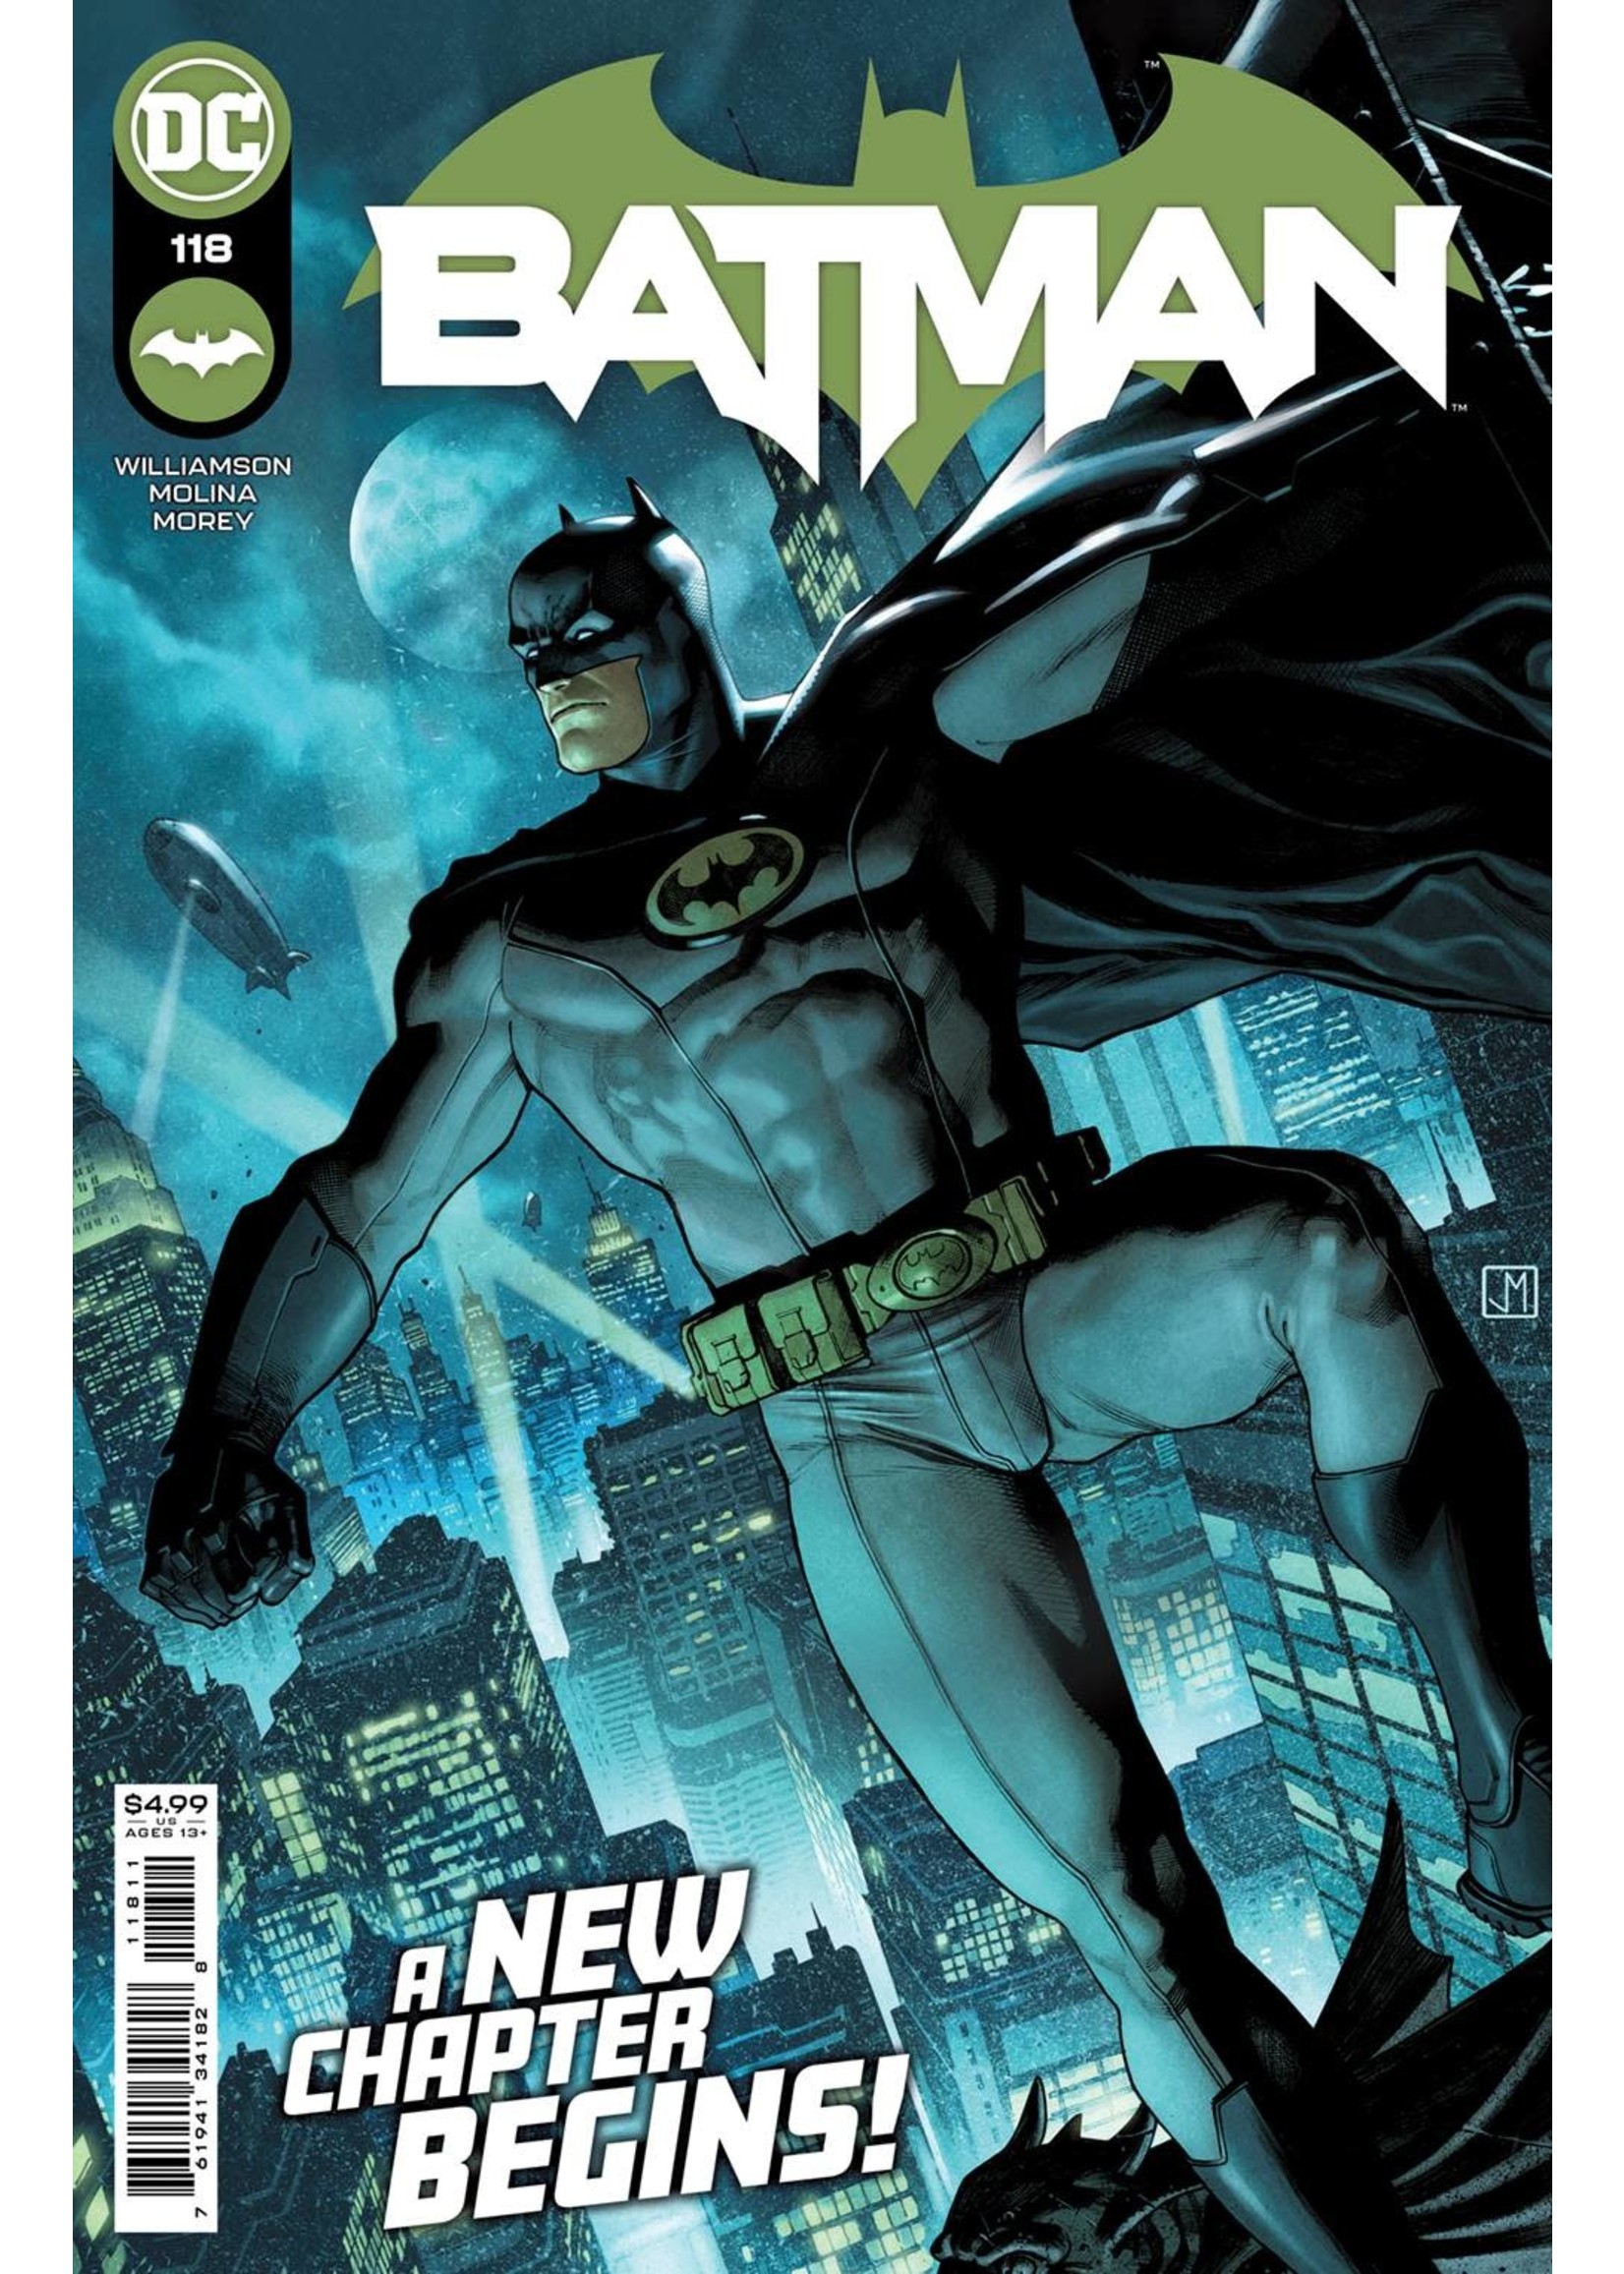 DC COMICS BATMAN #118 CVR A JORGE MOLINA